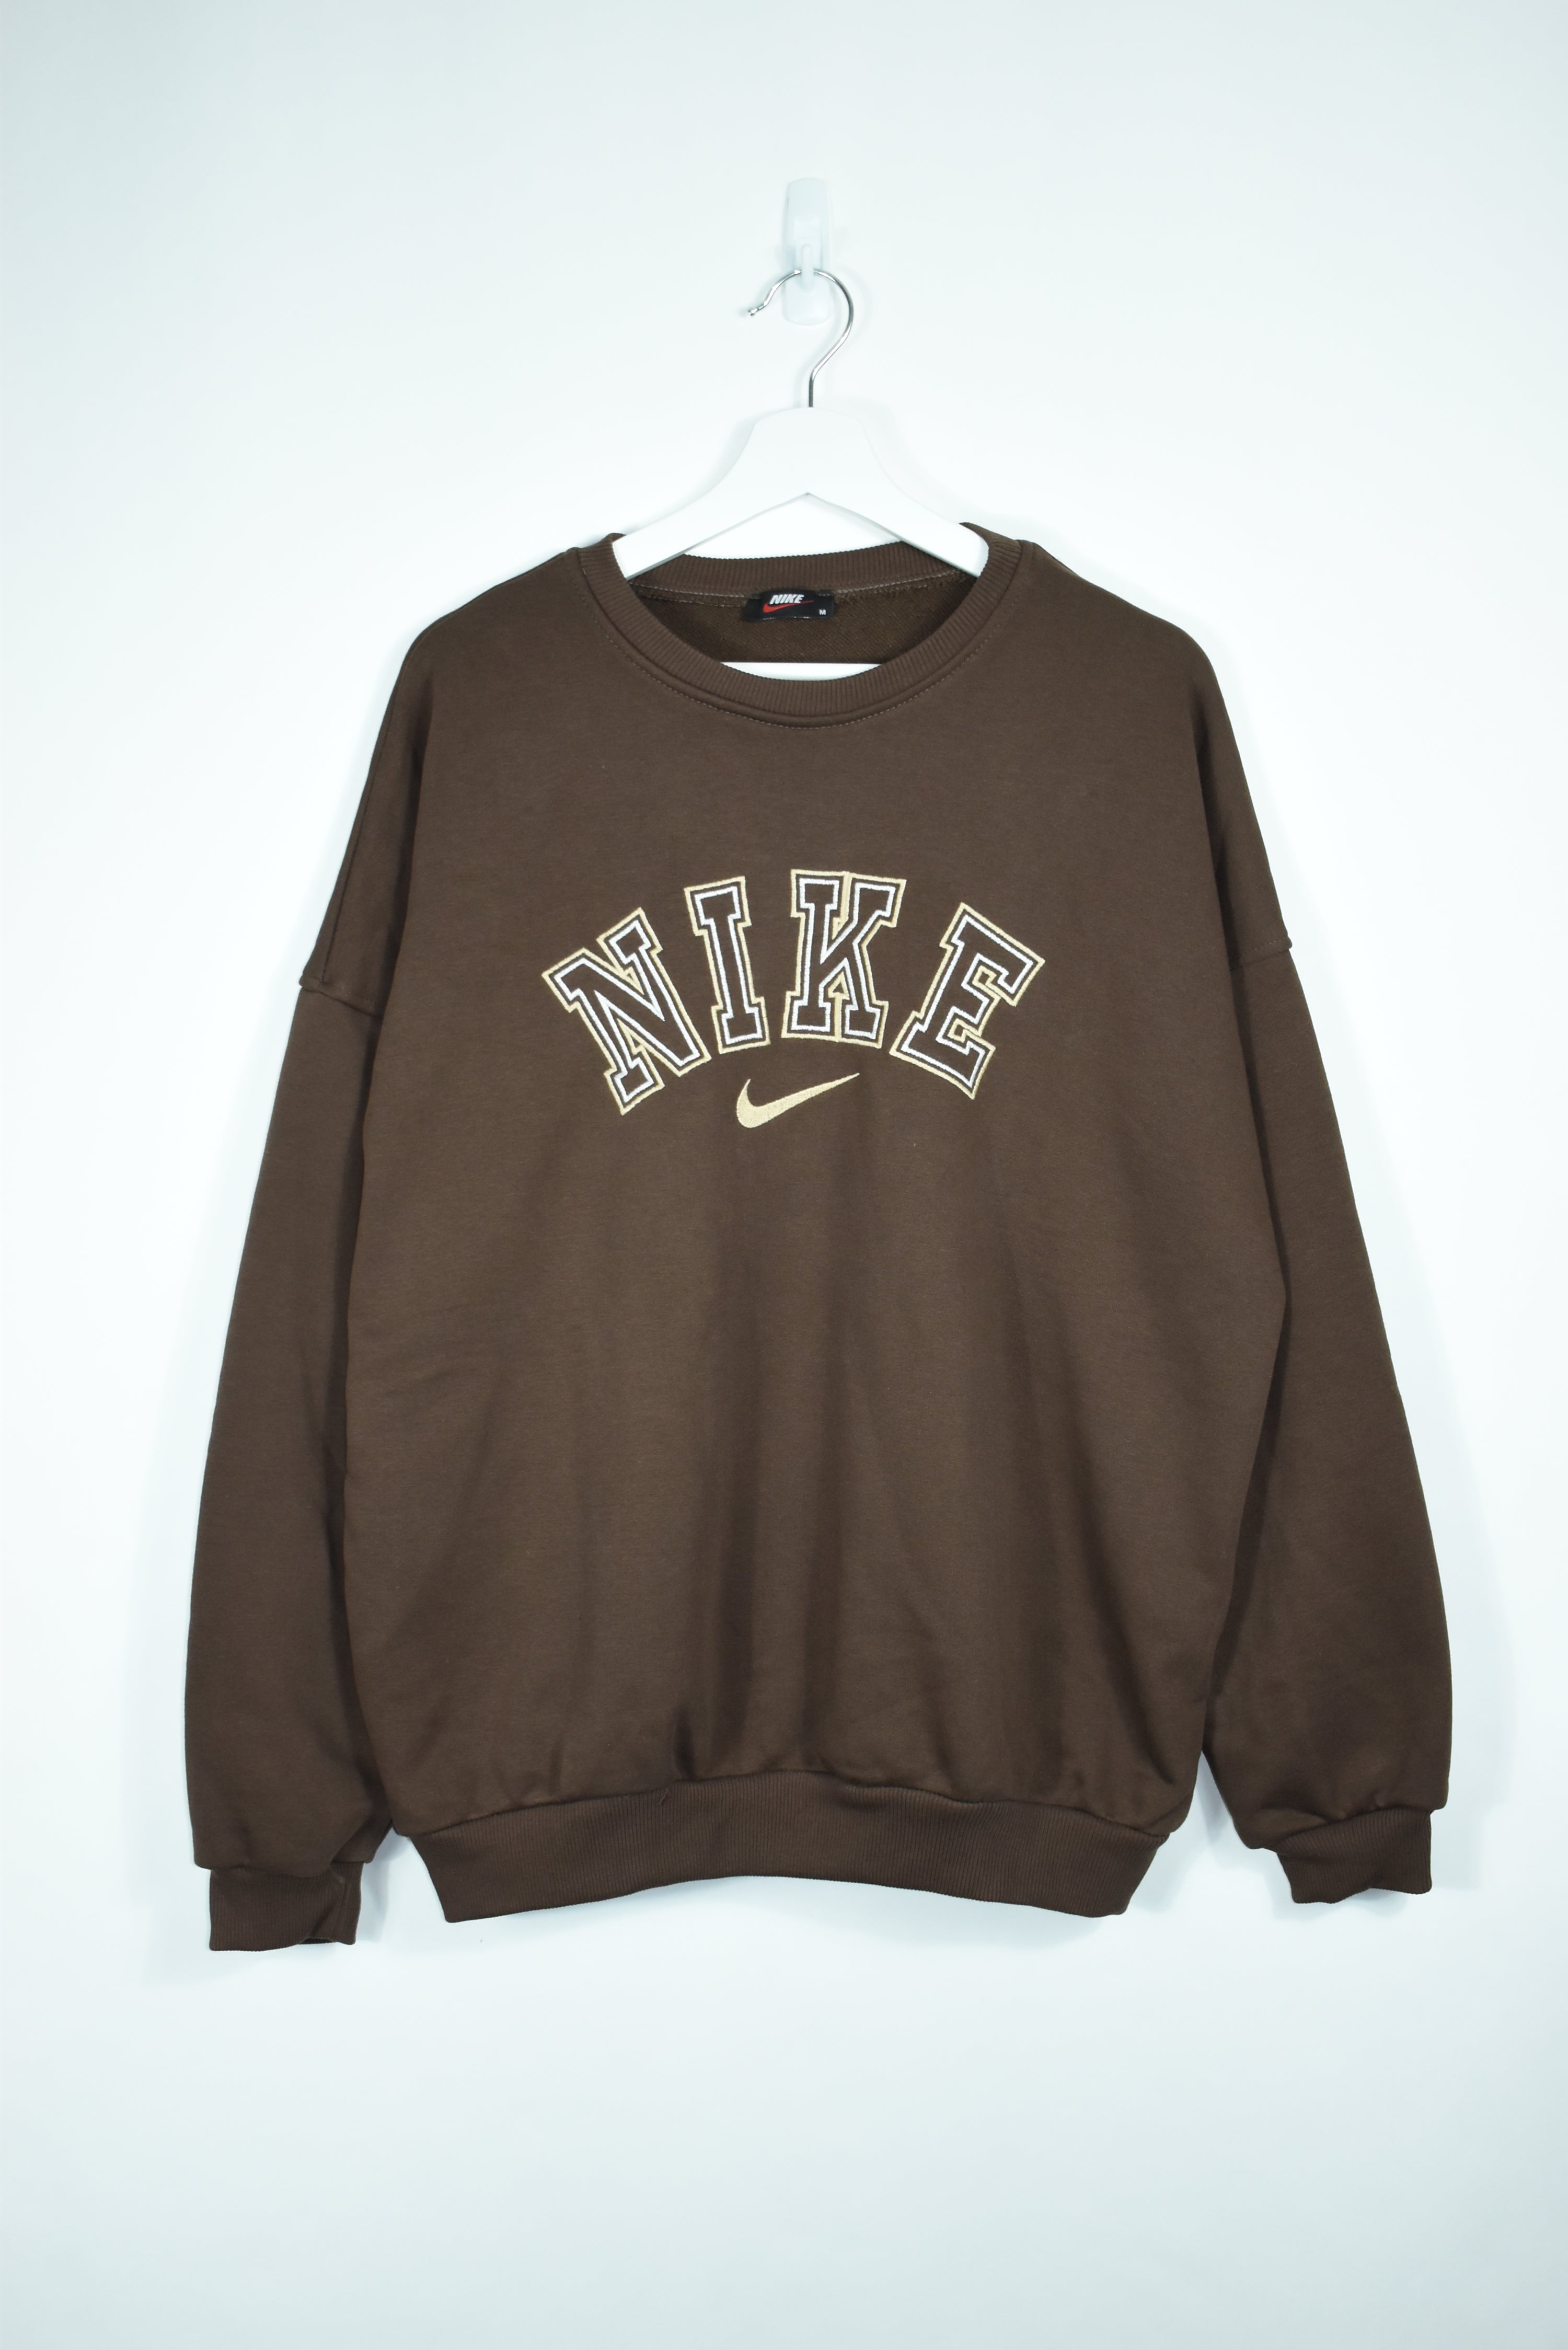 Vintage Nike Brown Bootleg Embroidery Sweatshirt